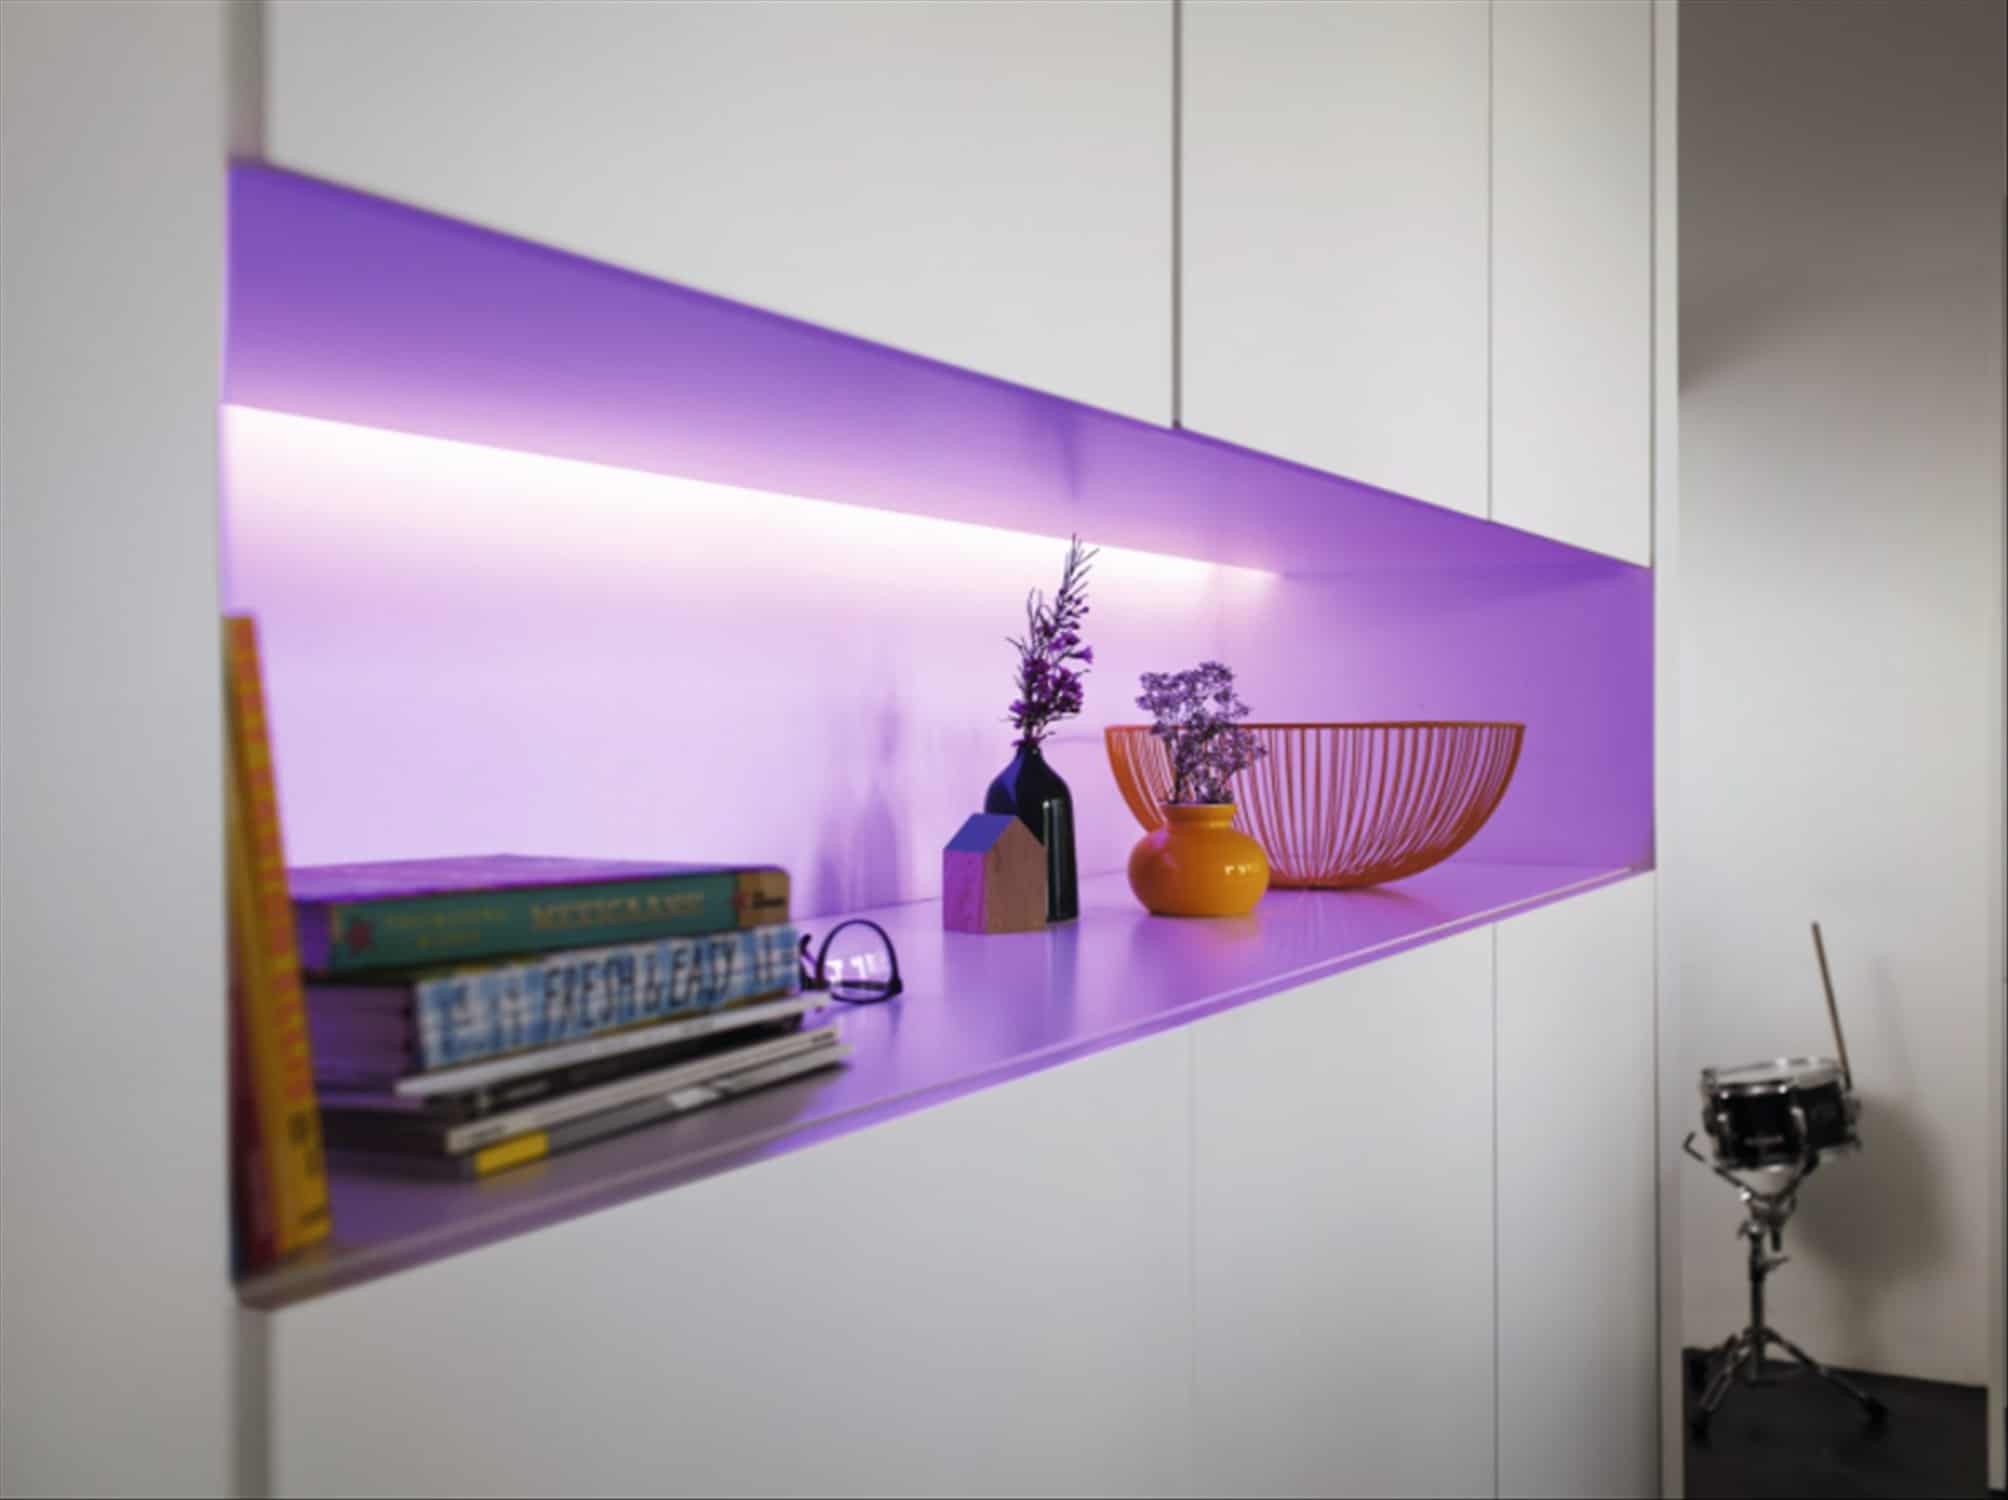 Philips Hue Lightstrip Plus v4  podporuje až 16 milionů zářivých barevných odstínů, kdy nabízí osvětlení v intenzitě až 1650 lm